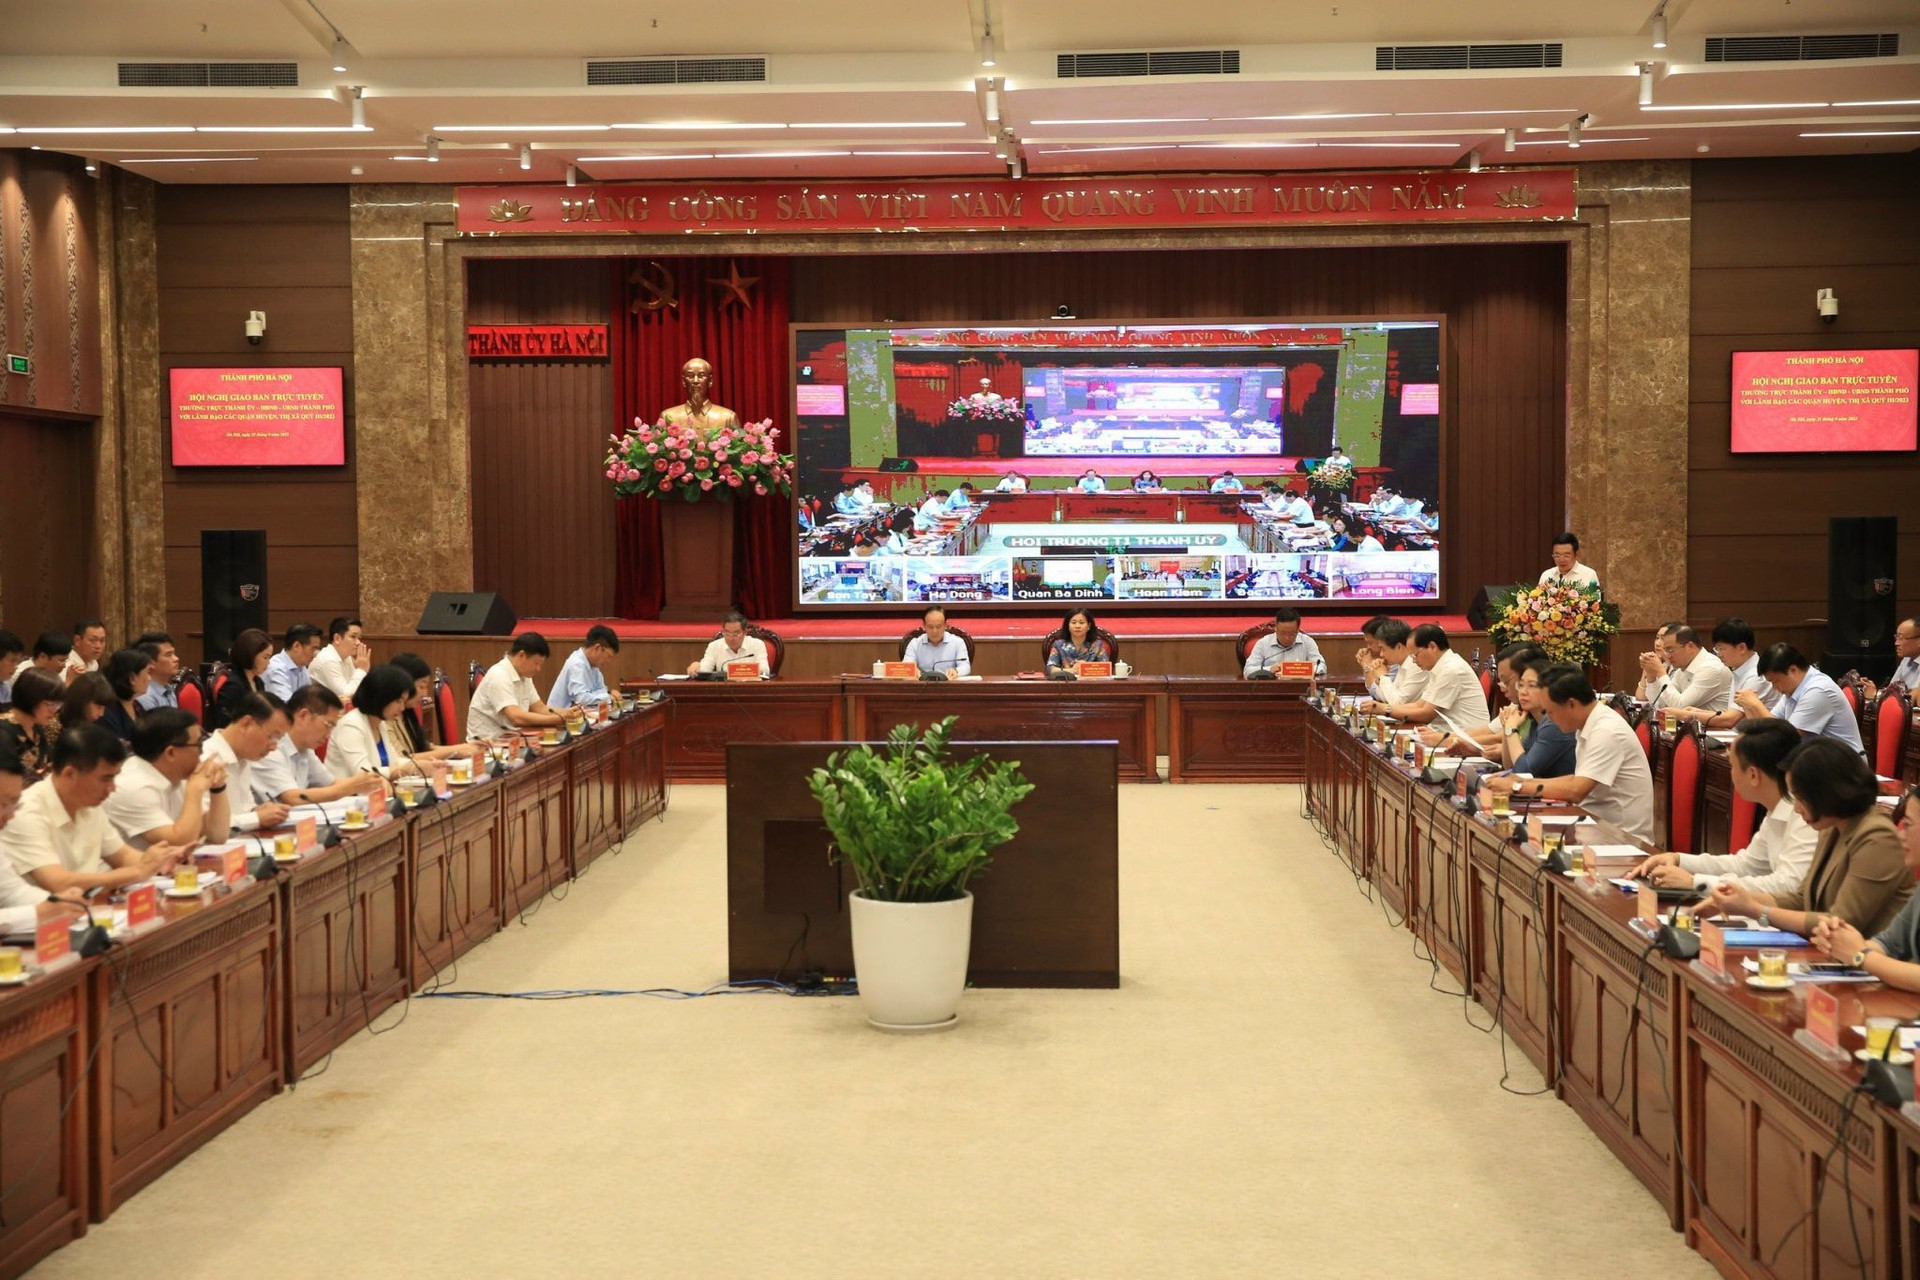 Hà Nội: Quận Thanh Xuân yêu cầu không để xe máy, xe điện ở chung cư mini - Ảnh 1.